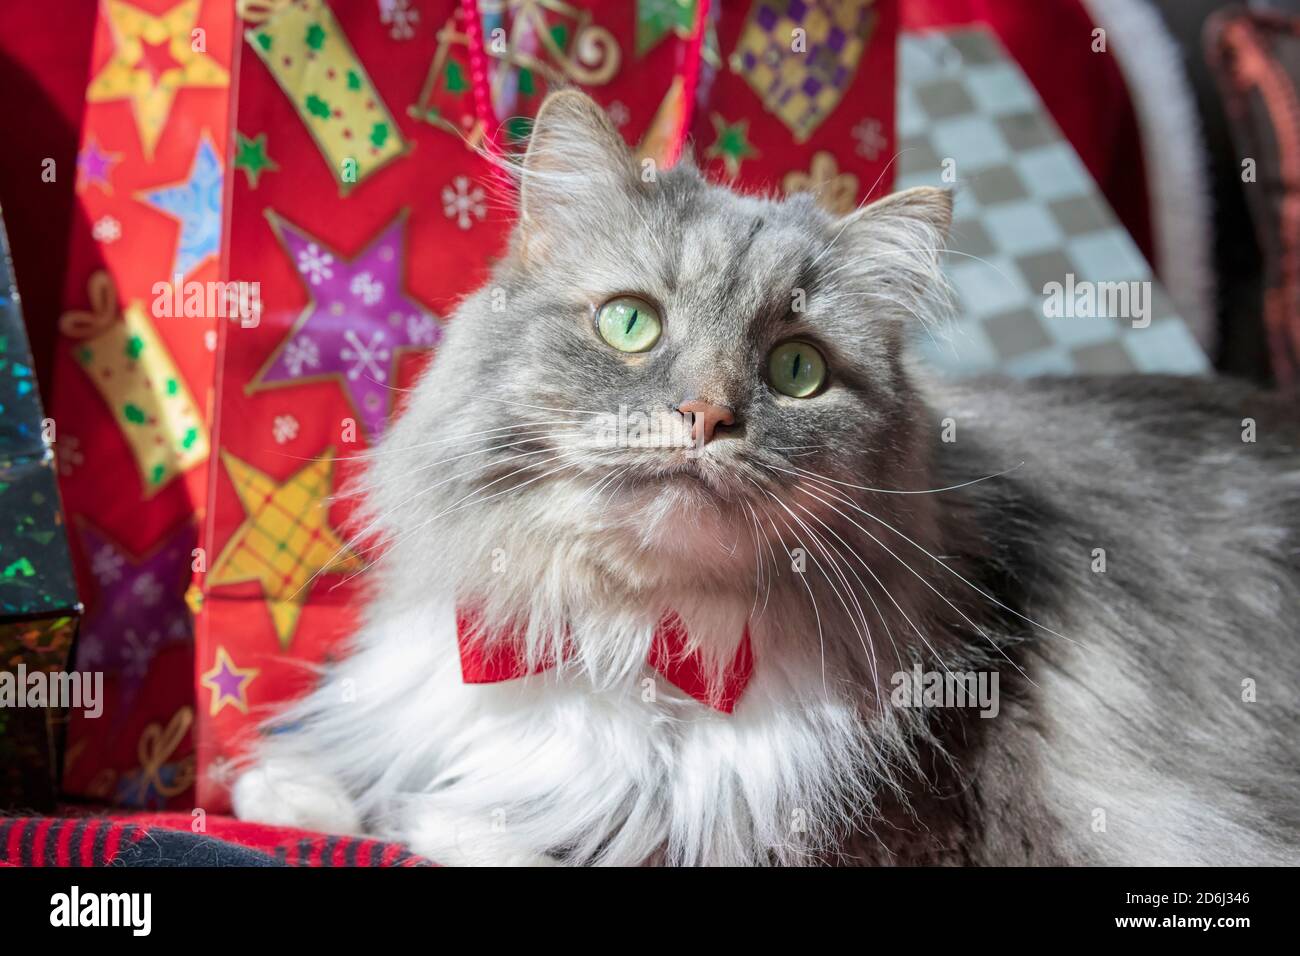 Un gatto tabby grigio dai capelli lunghi con un tema di Natale. Gatto della foresta siberiana con gli occhi verdi e una cravatta bianca che indossa una cravatta rossa. Foto Stock